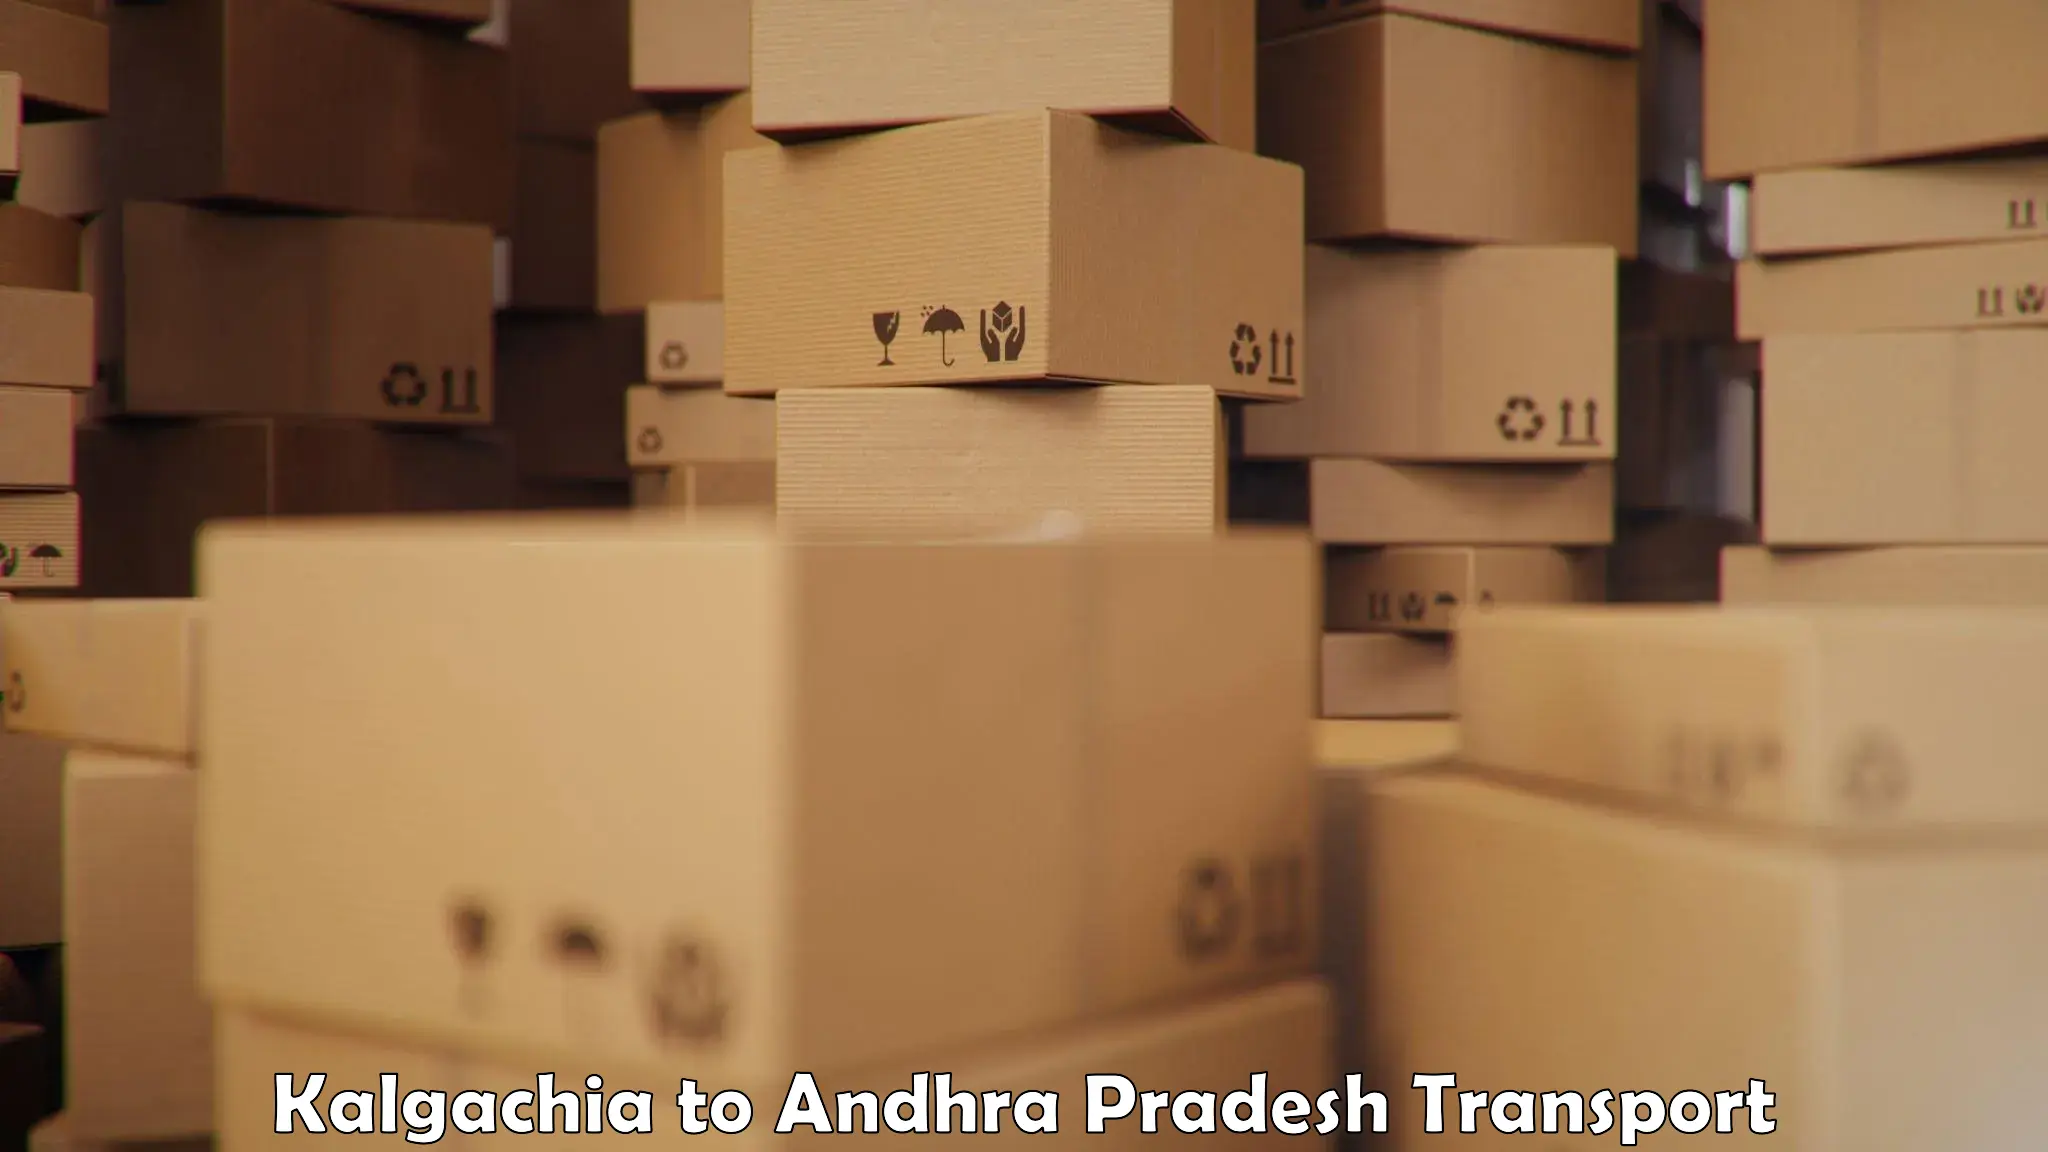 Truck transport companies in India Kalgachia to Narasannapeta